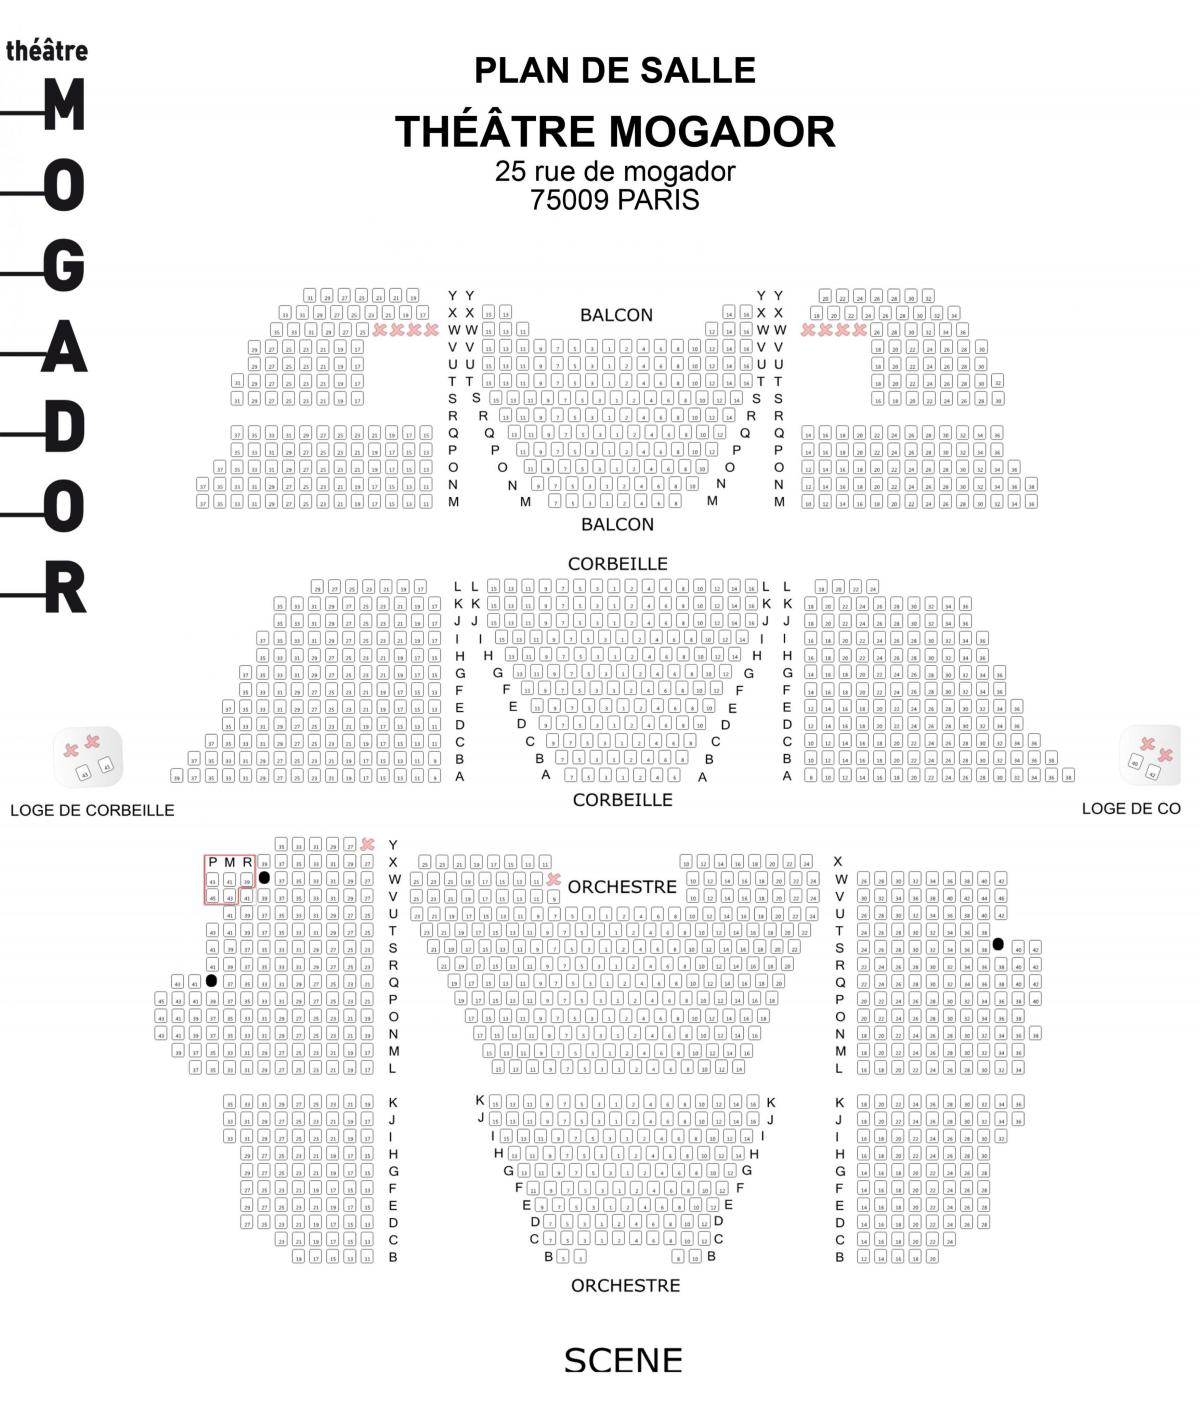 מפה של Théâtre מוגדור